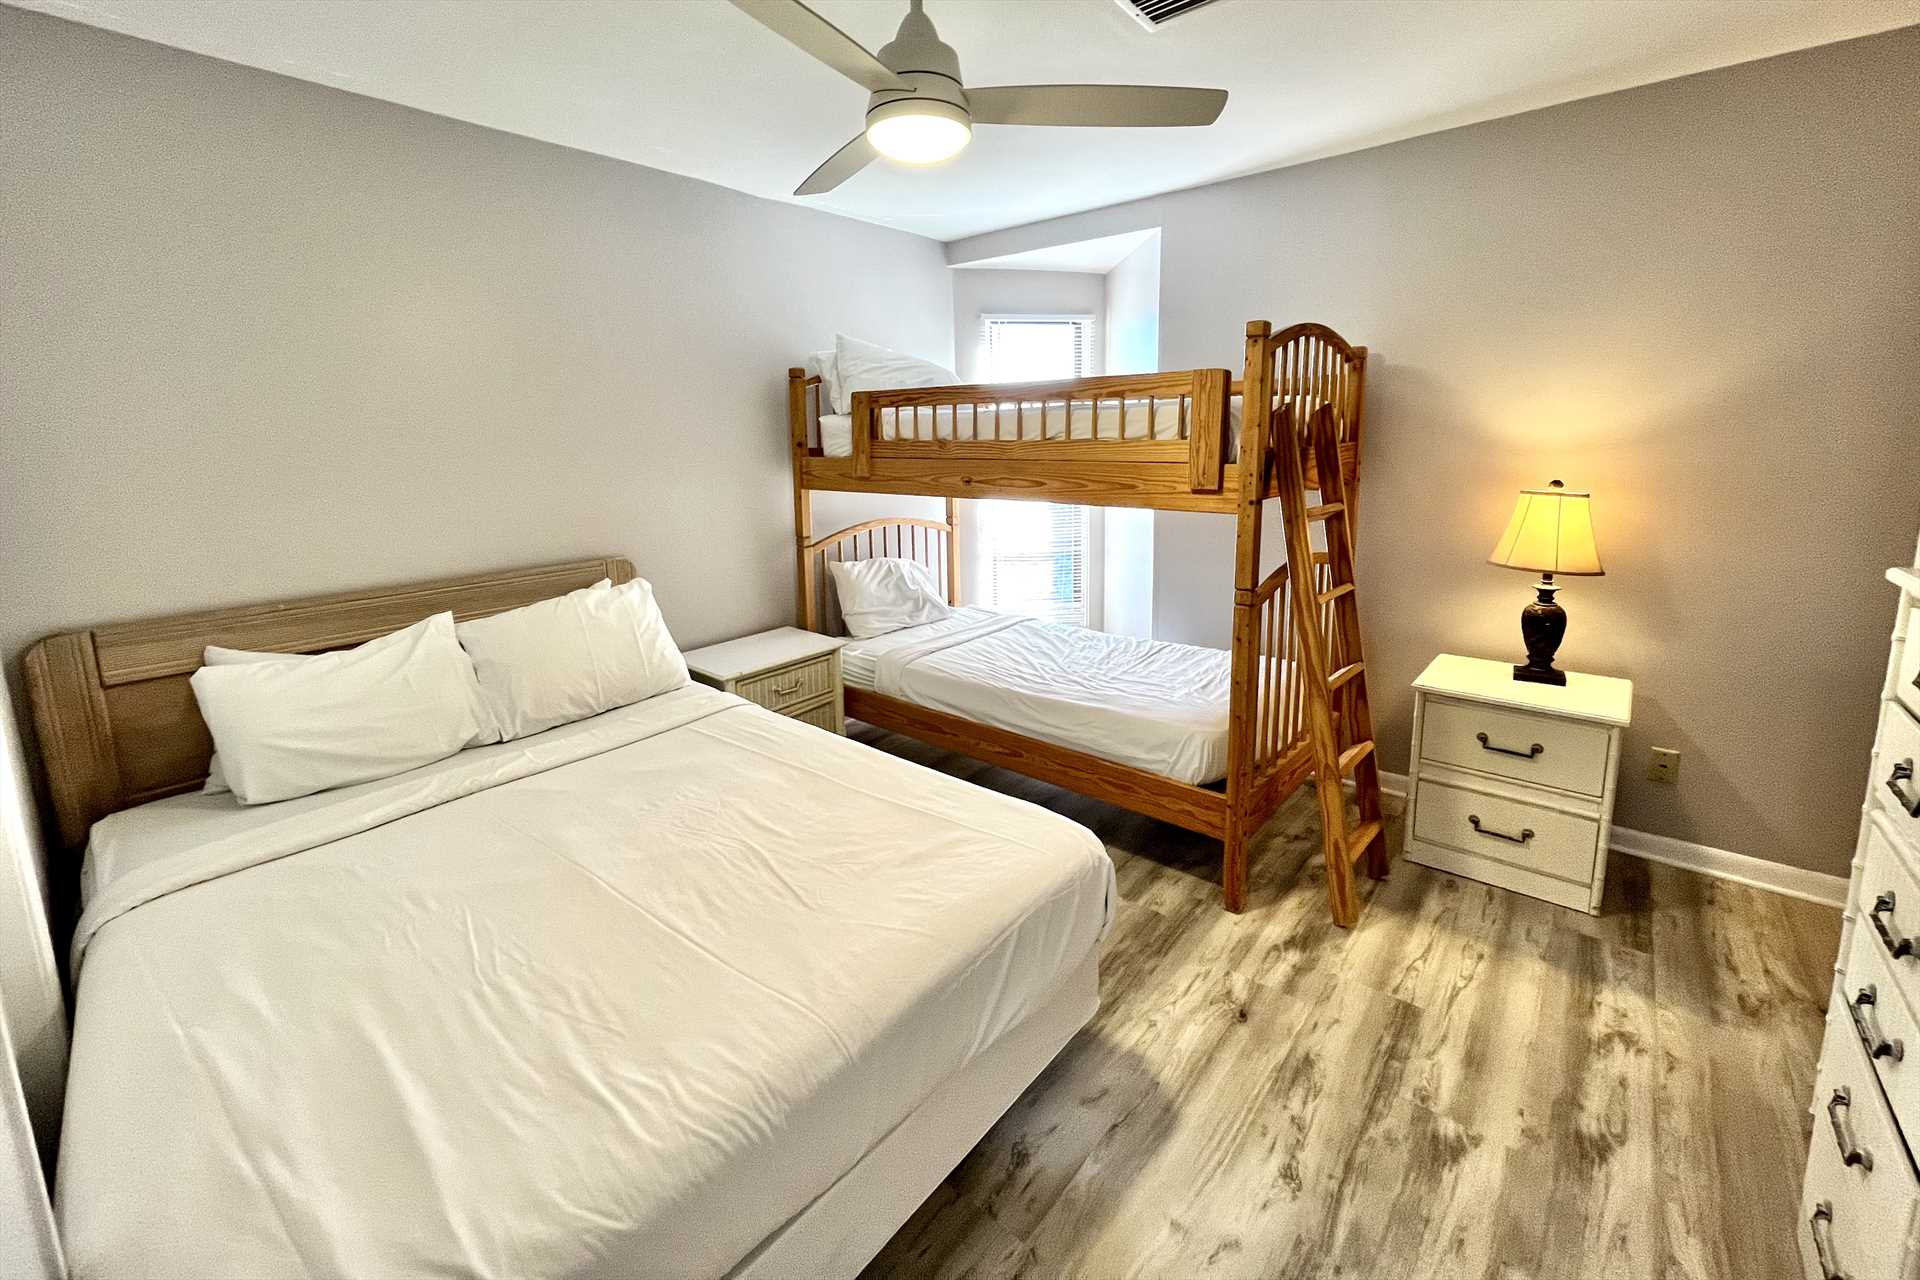 Guest bedroom - Queen and Twin bunks